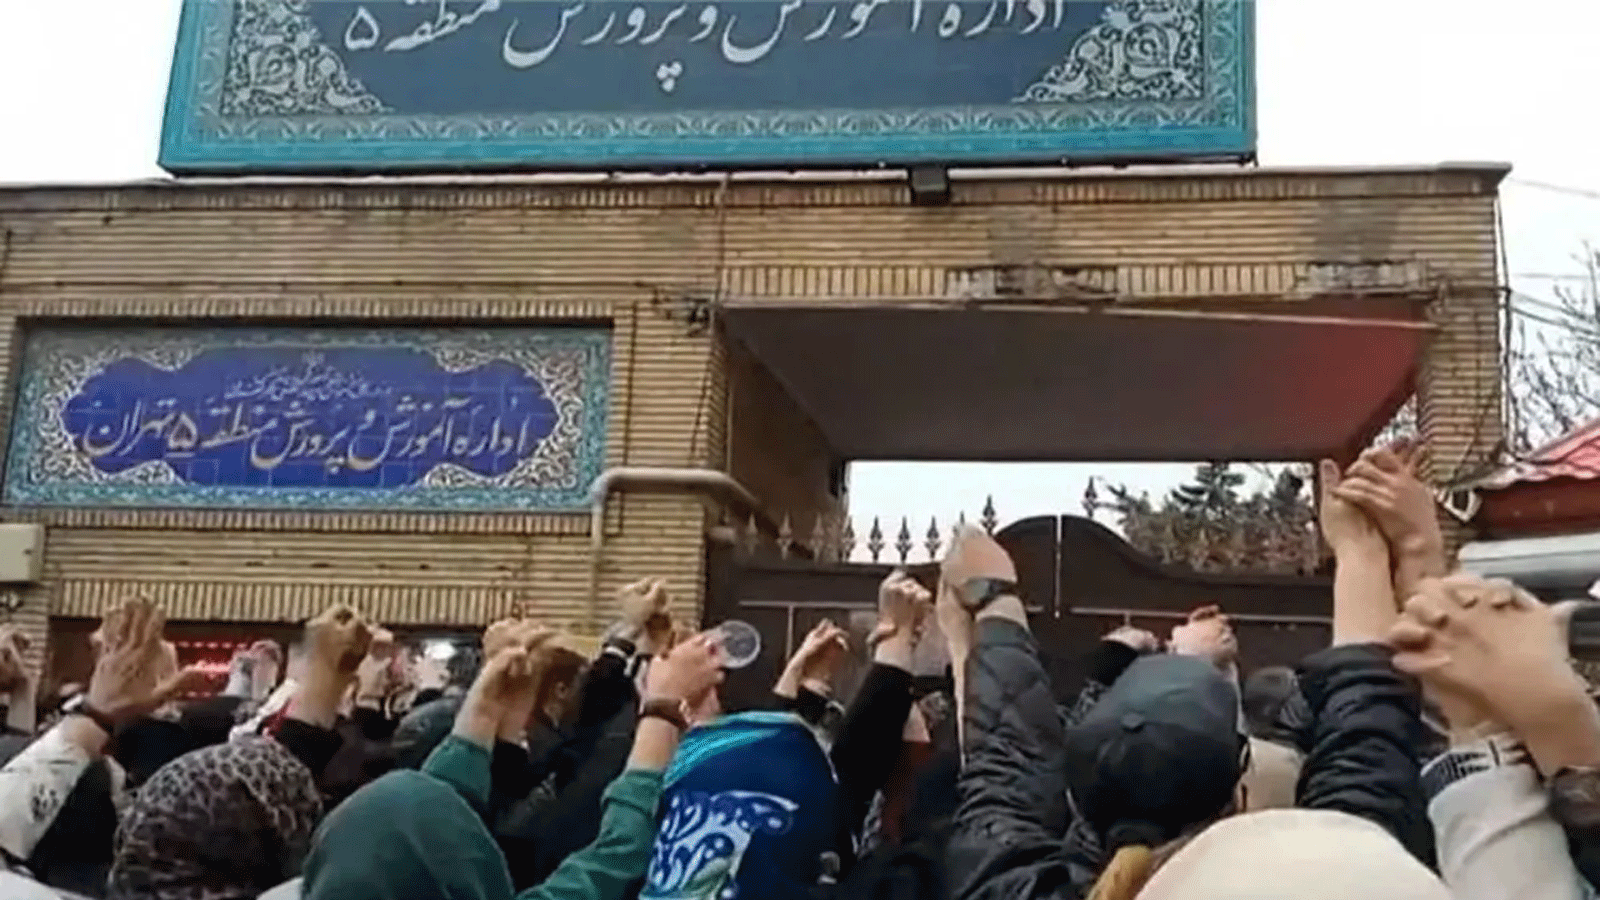 أهالي الطلاب يعتصمون تعبيراً عن غضبهم في الشوارع وأمام مبنى وزارة التربية والتعليم في طهران، عقب تسميم تلاميذ المدارس